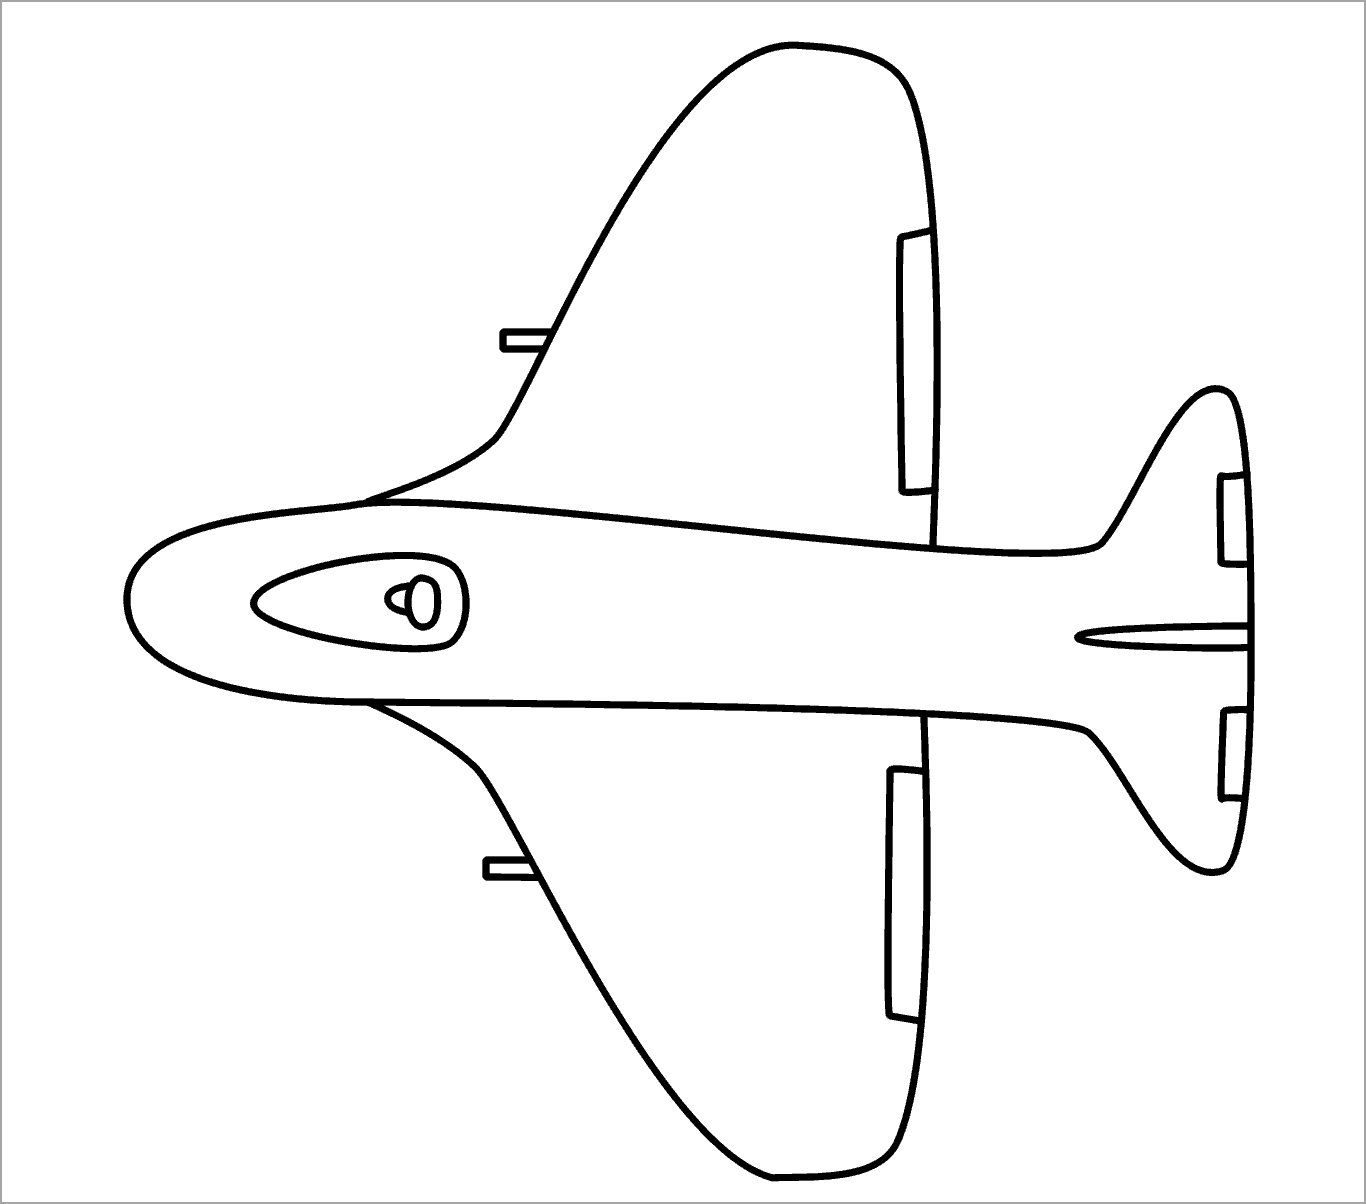 Mẫu hình vẽ máy bay cho bé tô màu đơn giản và dễ thương